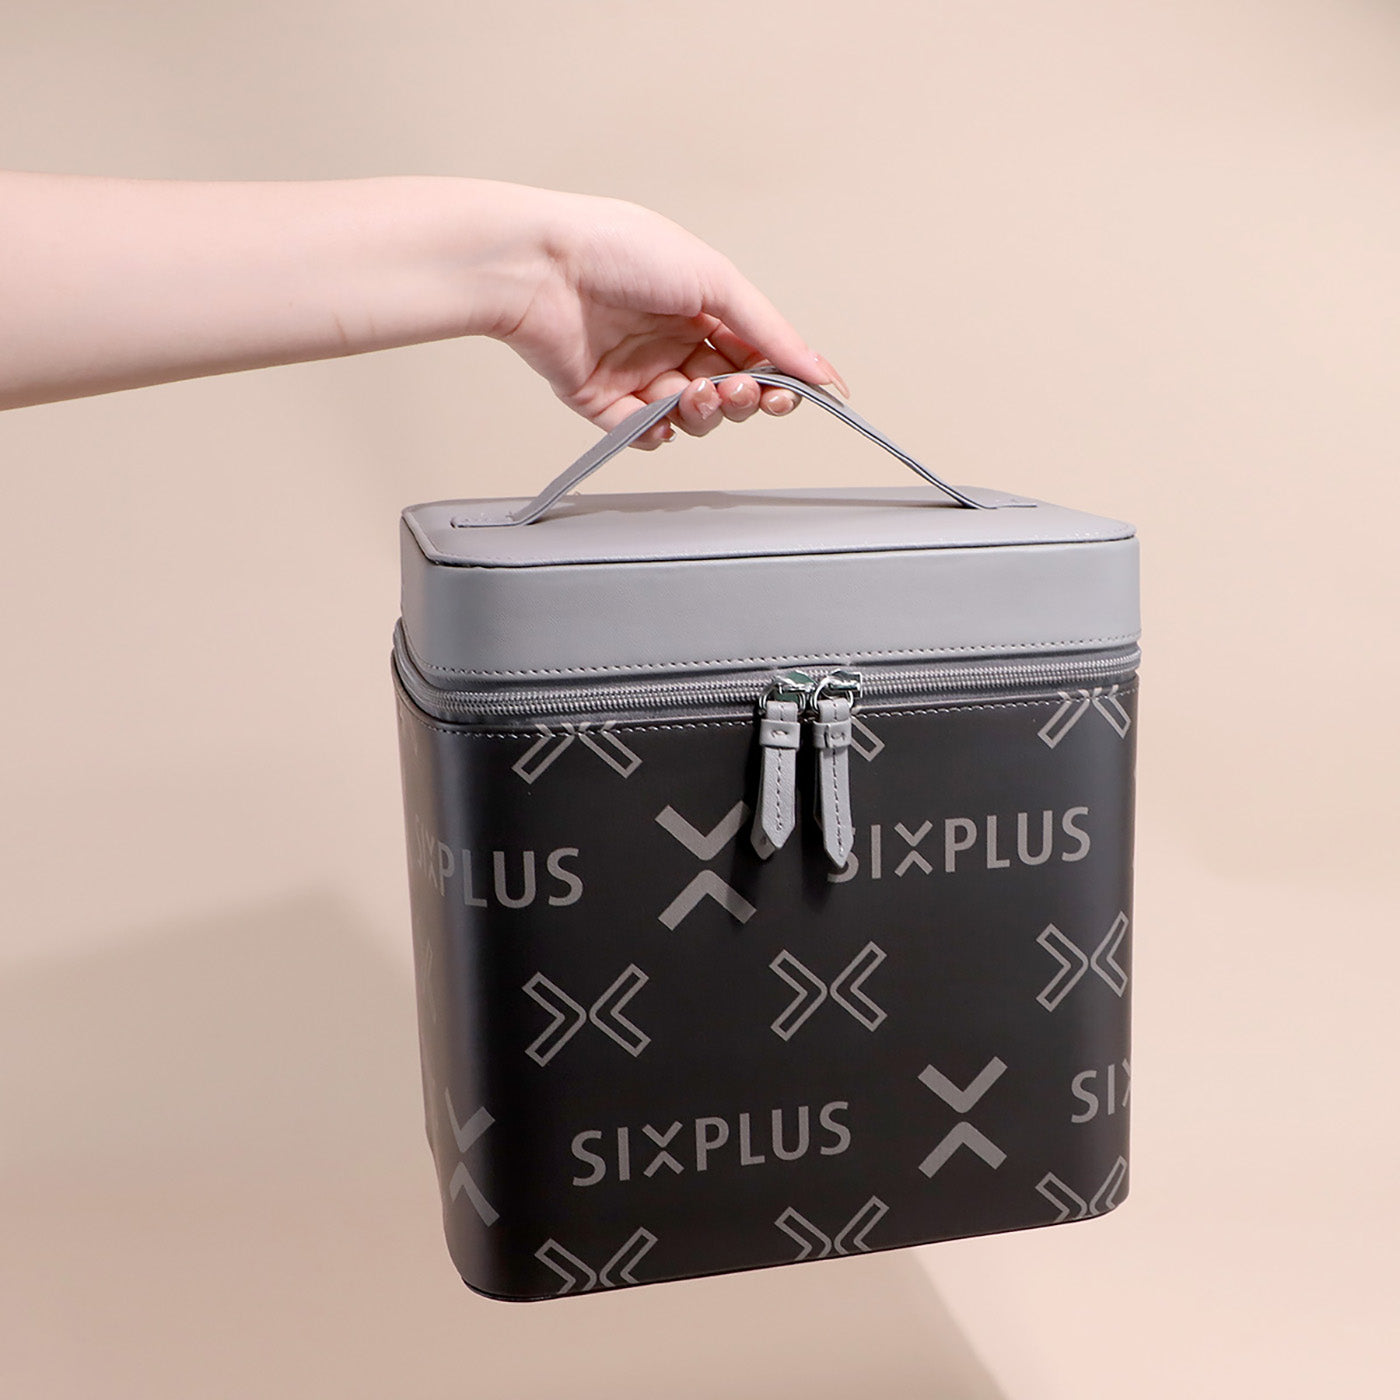 SIXPLUS メイクボックス 大容量